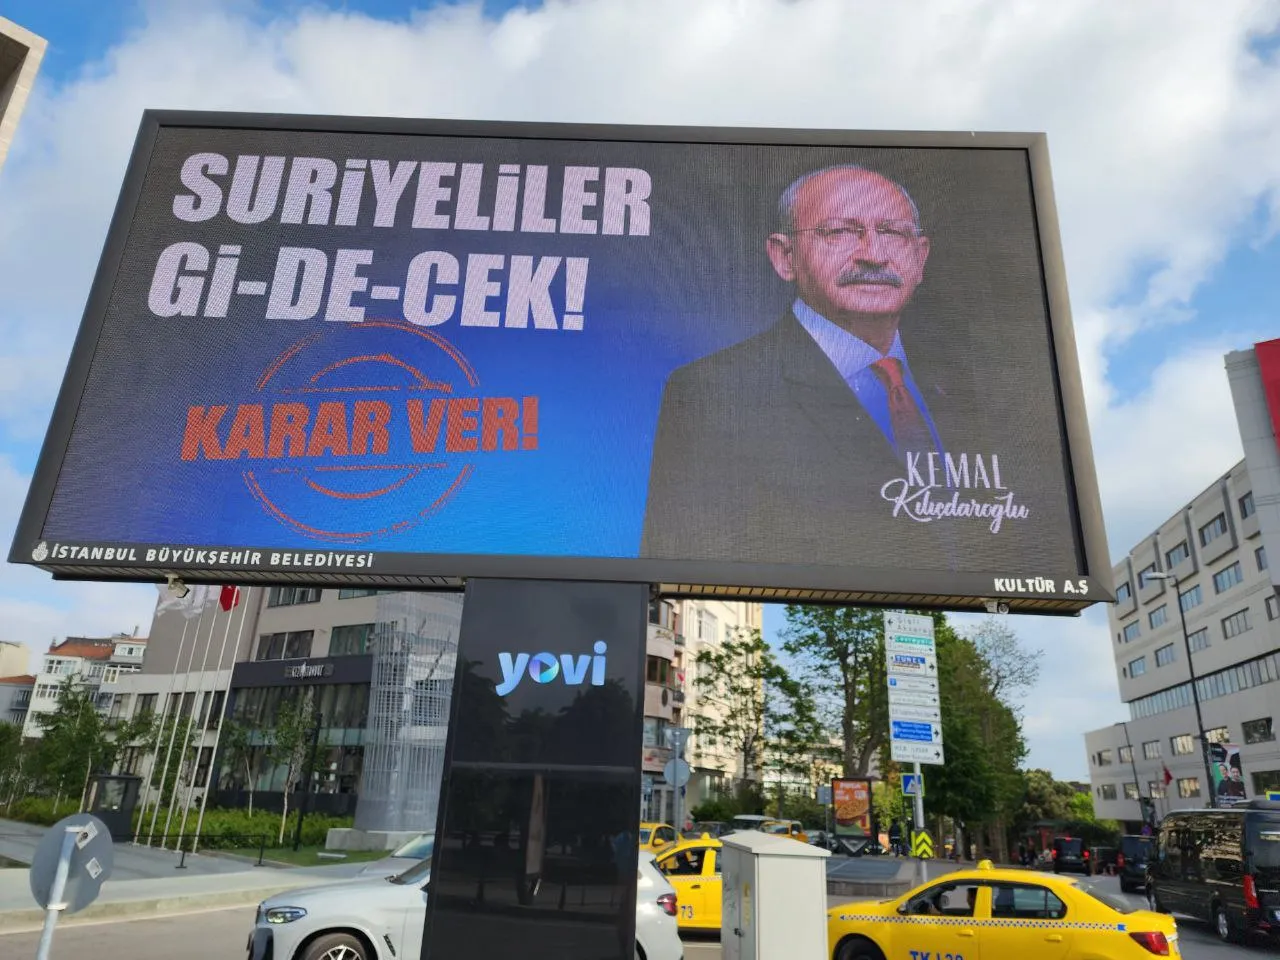 حملات المعارضة الانتخابية تزيد مخاوف اللاجئين السوريين في تركيا